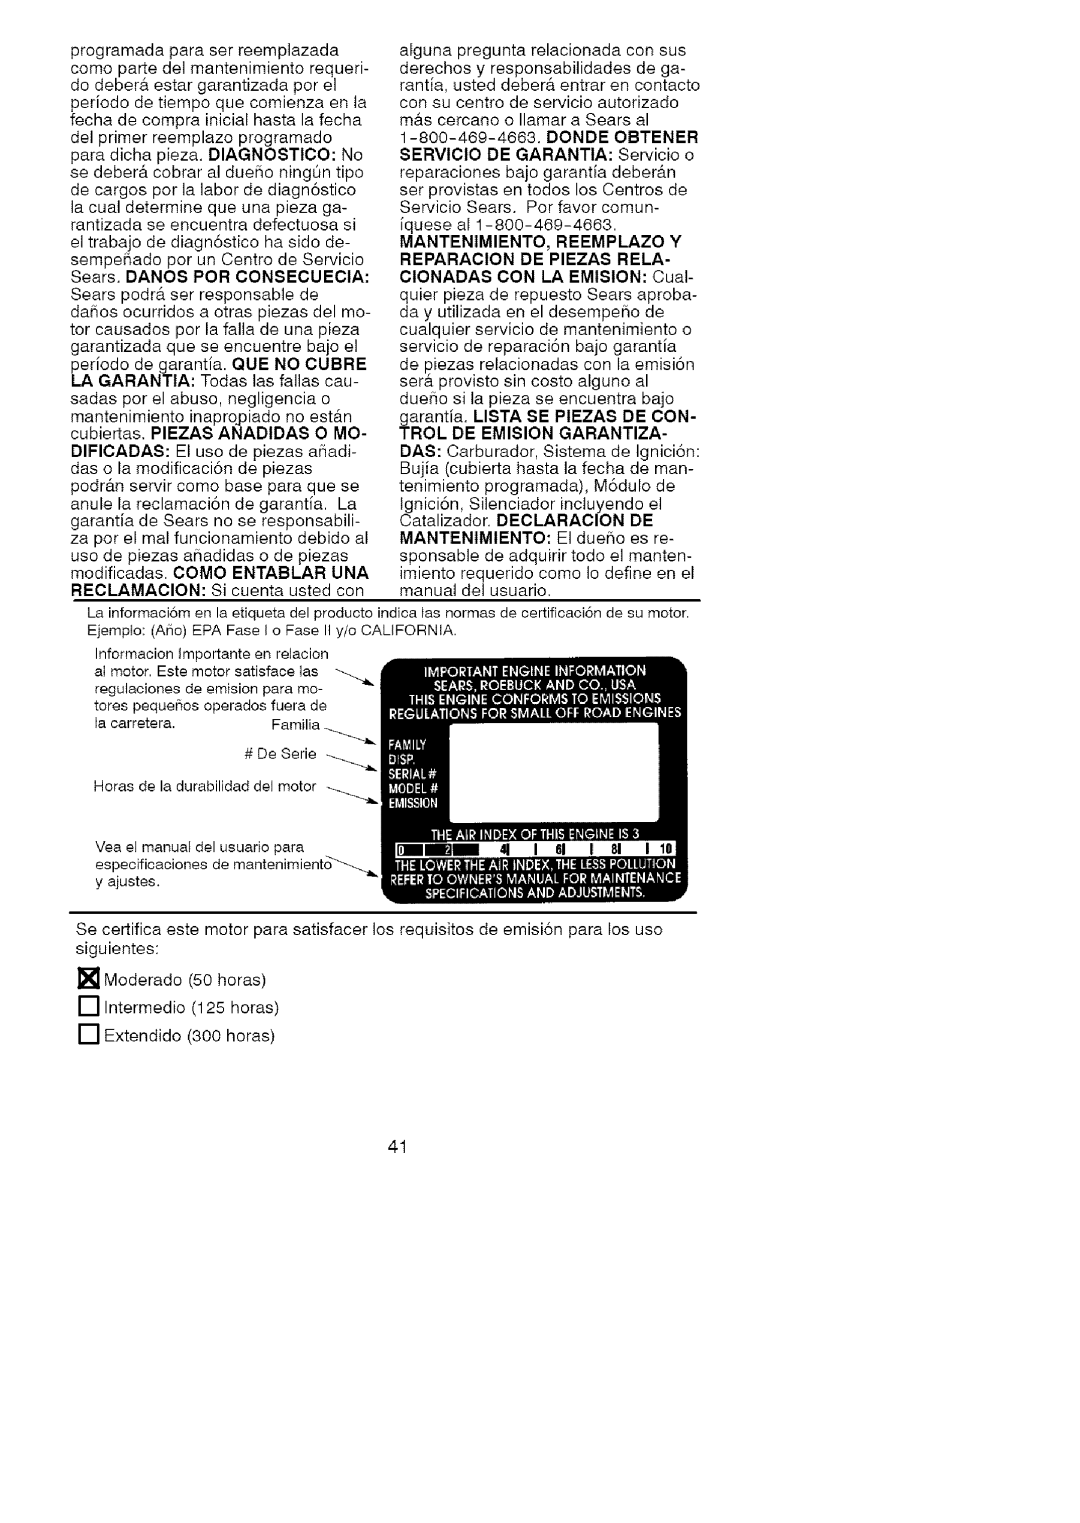 Craftsman 358.79107 RECLAMACION:Sicuentaustedcon manual del usuario 